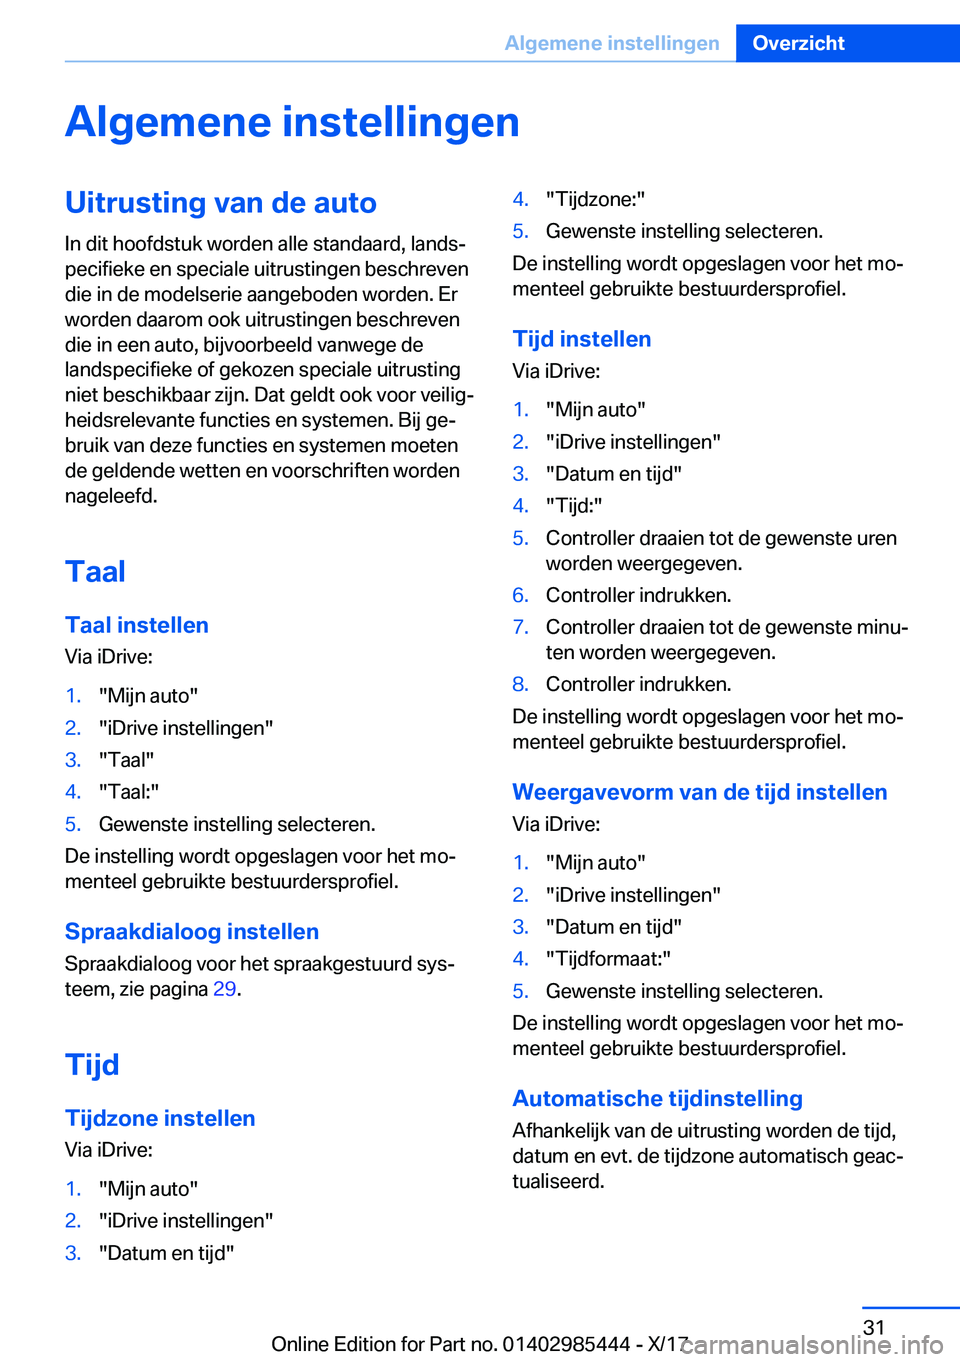 BMW X1 2018  Instructieboekjes (in Dutch) �A�l�g�e�m�e�n�e��i�n�s�t�e�l�l�i�n�g�e�n�U�i�t�r�u�s�t�i�n�g��v�a�n��d�e��a�u�t�o
�I�n� �d�i�t� �h�o�o�f�d�s�t�u�k� �w�o�r�d�e�n� �a�l�l�e� �s�t�a�n�d�a�a�r�d�,� �l�a�n�d�sj
�p�e�c�i�f�i�e�k�e� 